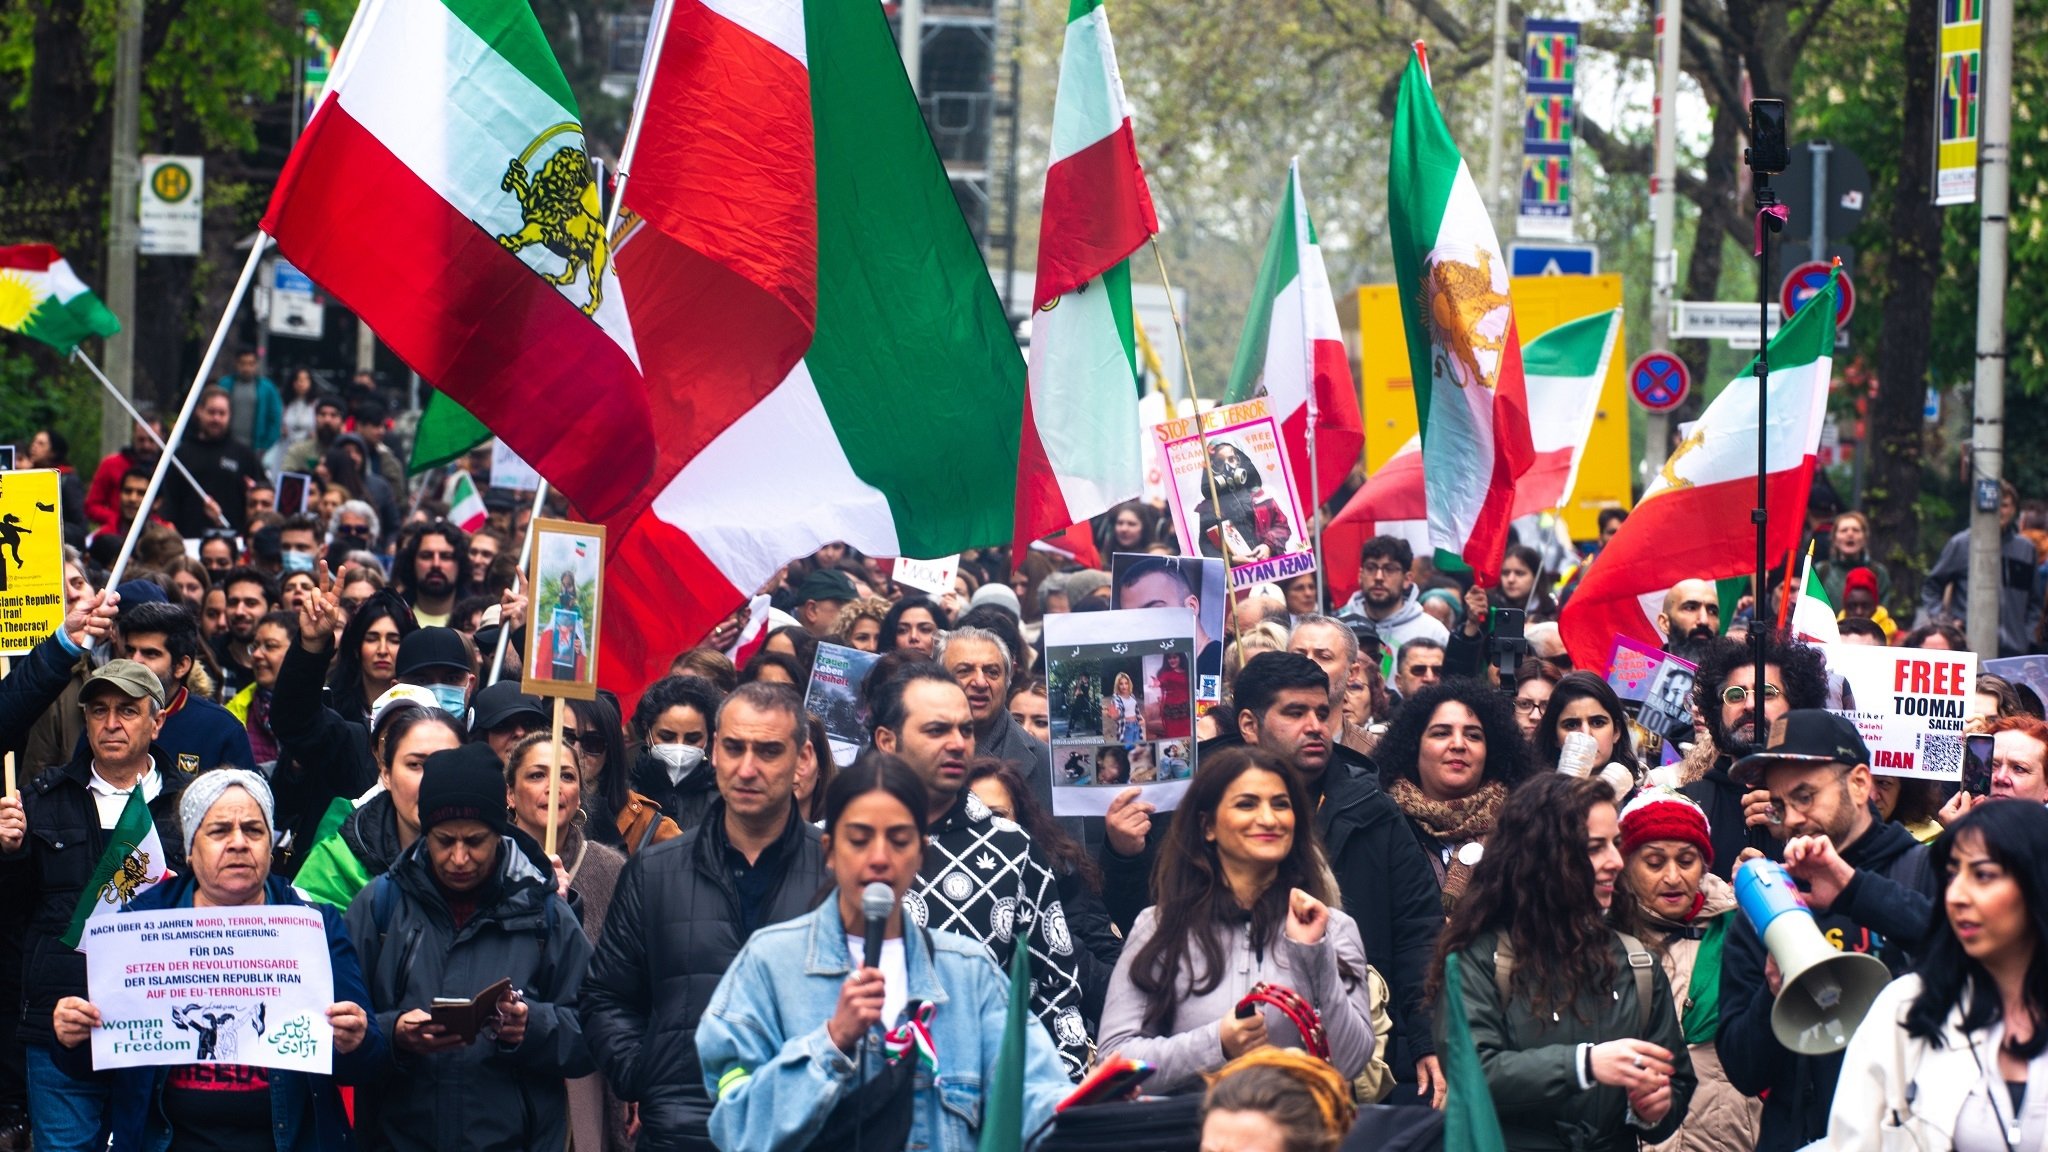 Hunderte Menschen demonstrieren in Bonn gegen das iranische Regime nach dem Todesurteil gegen Jamshid Sharmahd